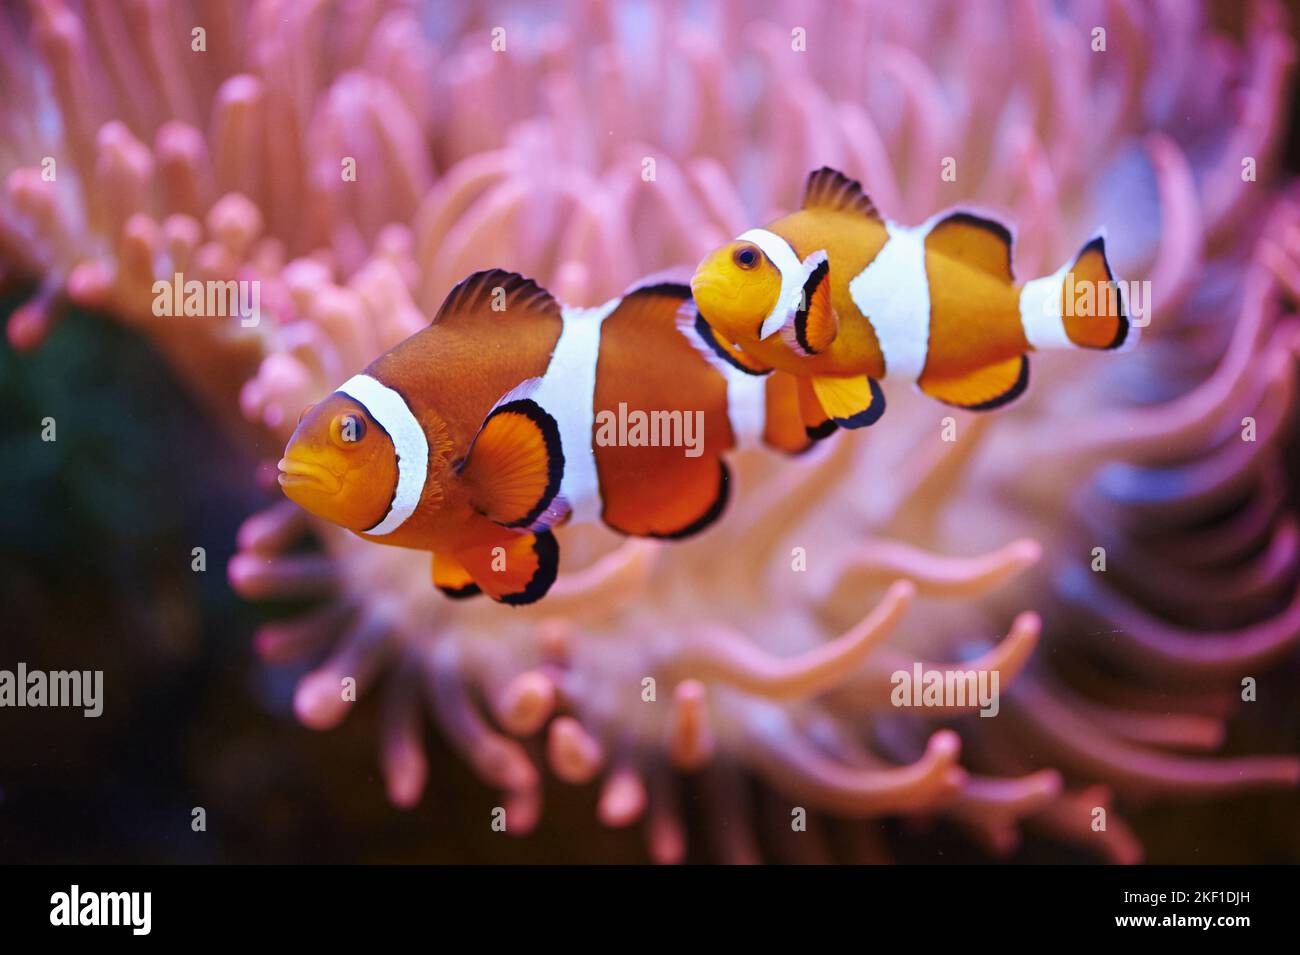 Anemone Clown Fish Stock Photo